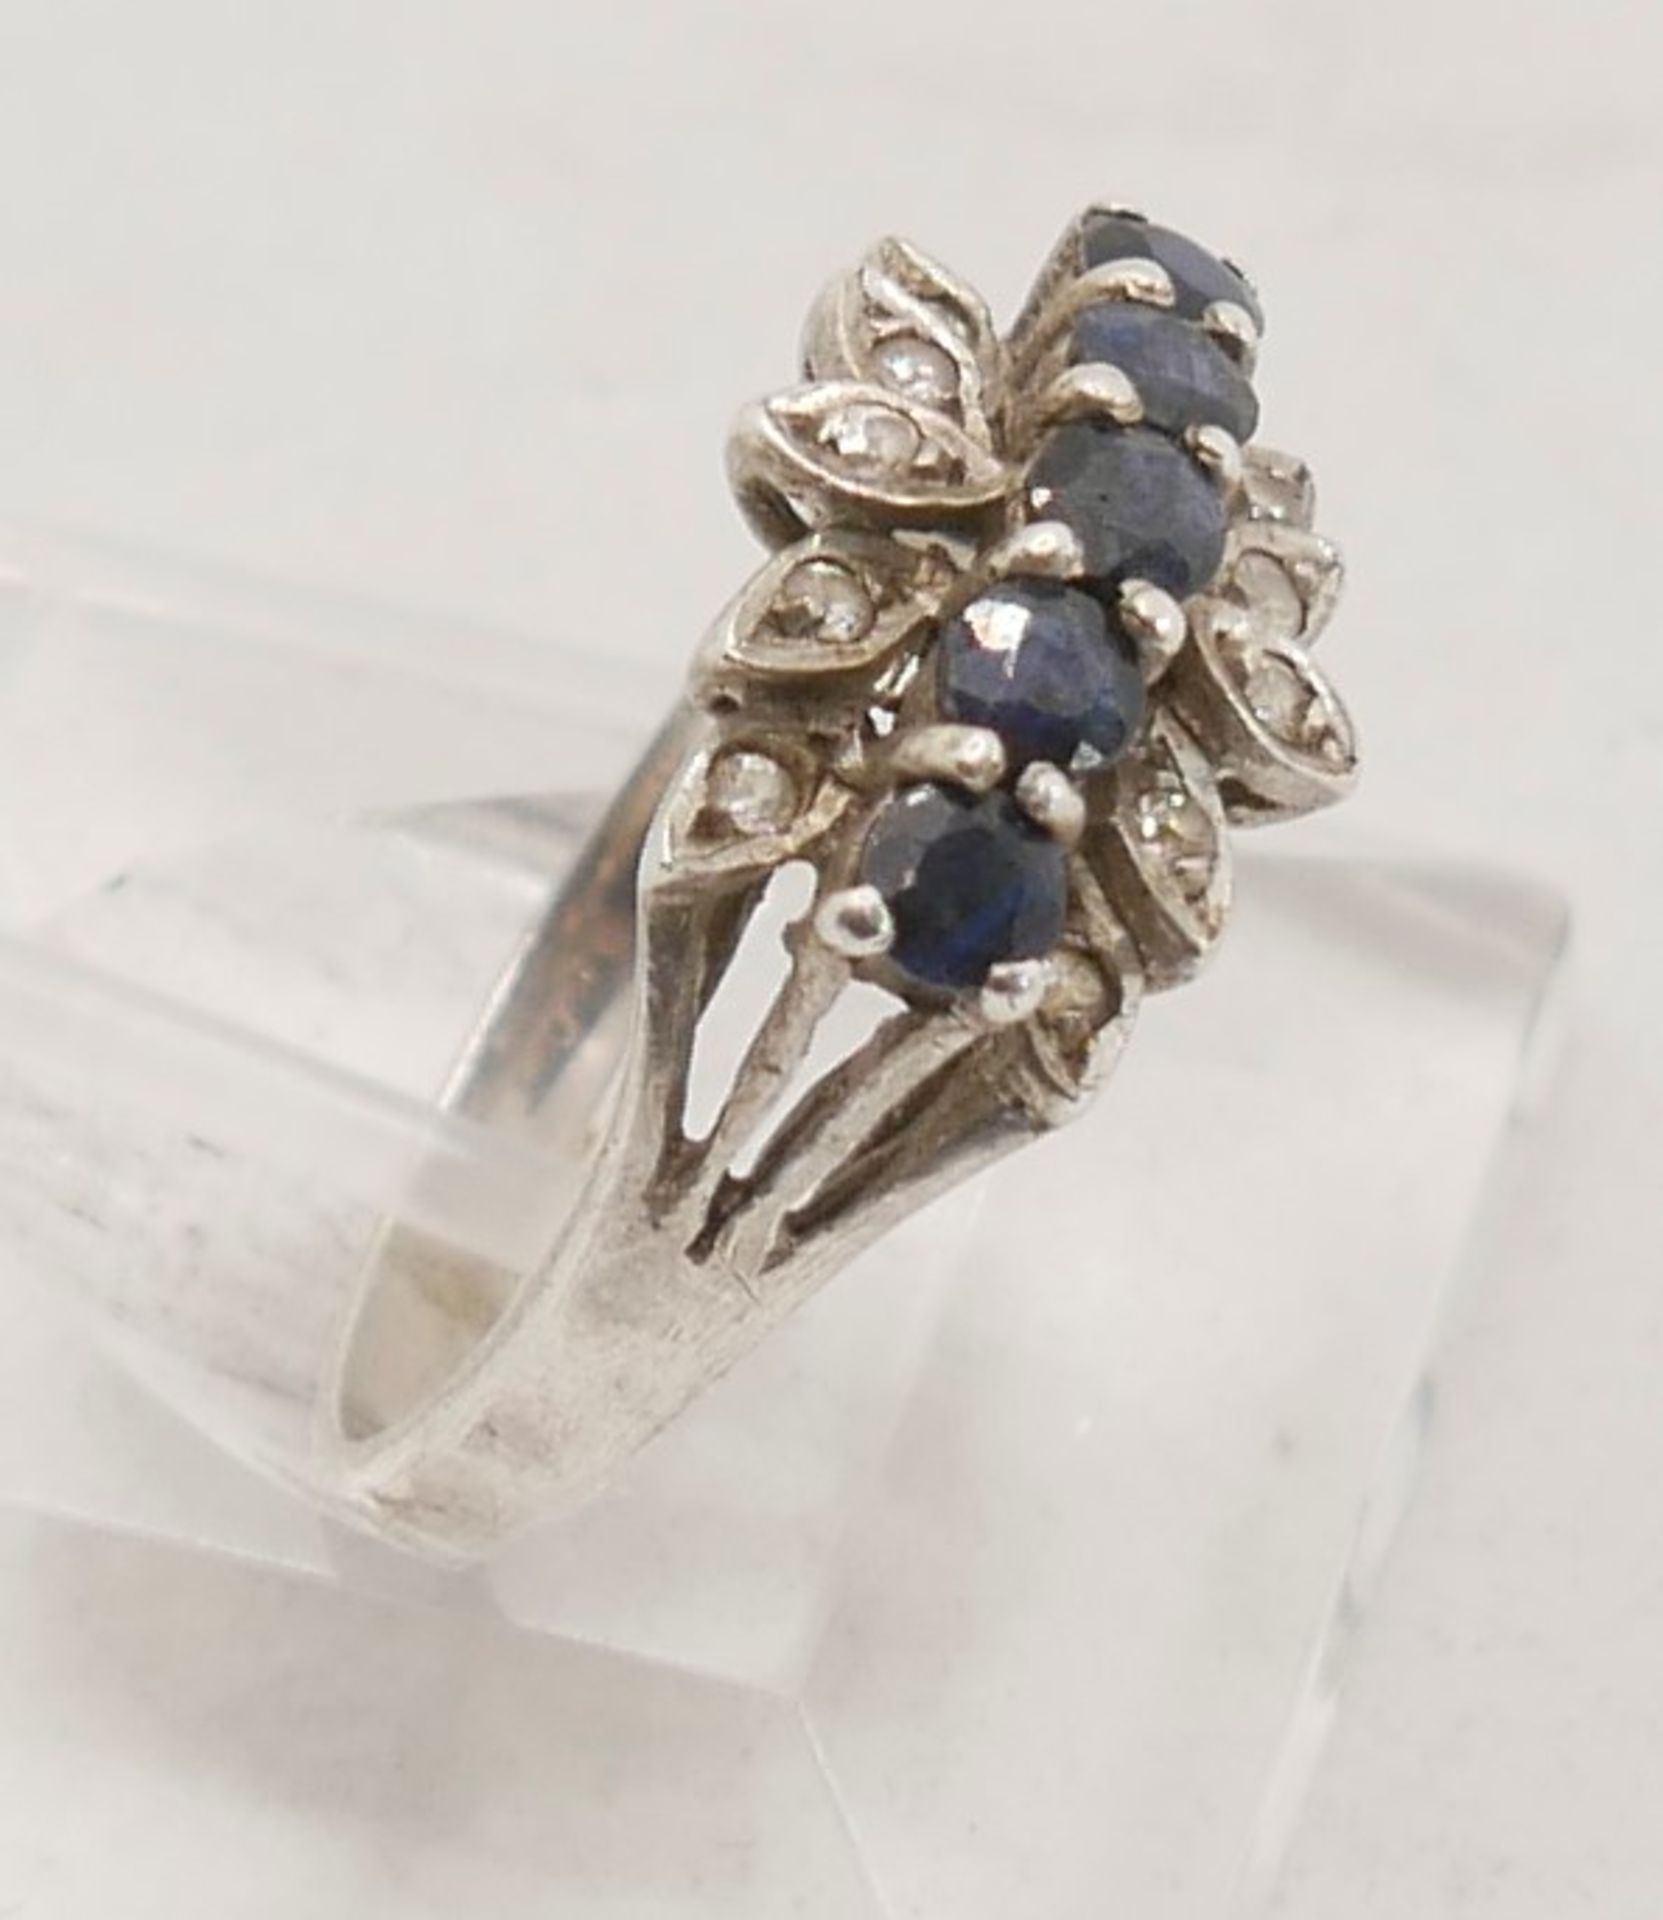 Floraler Damenring mit dunkelblauen Glassteinen, 925er Silber. Ringgröße 56 - Image 2 of 2